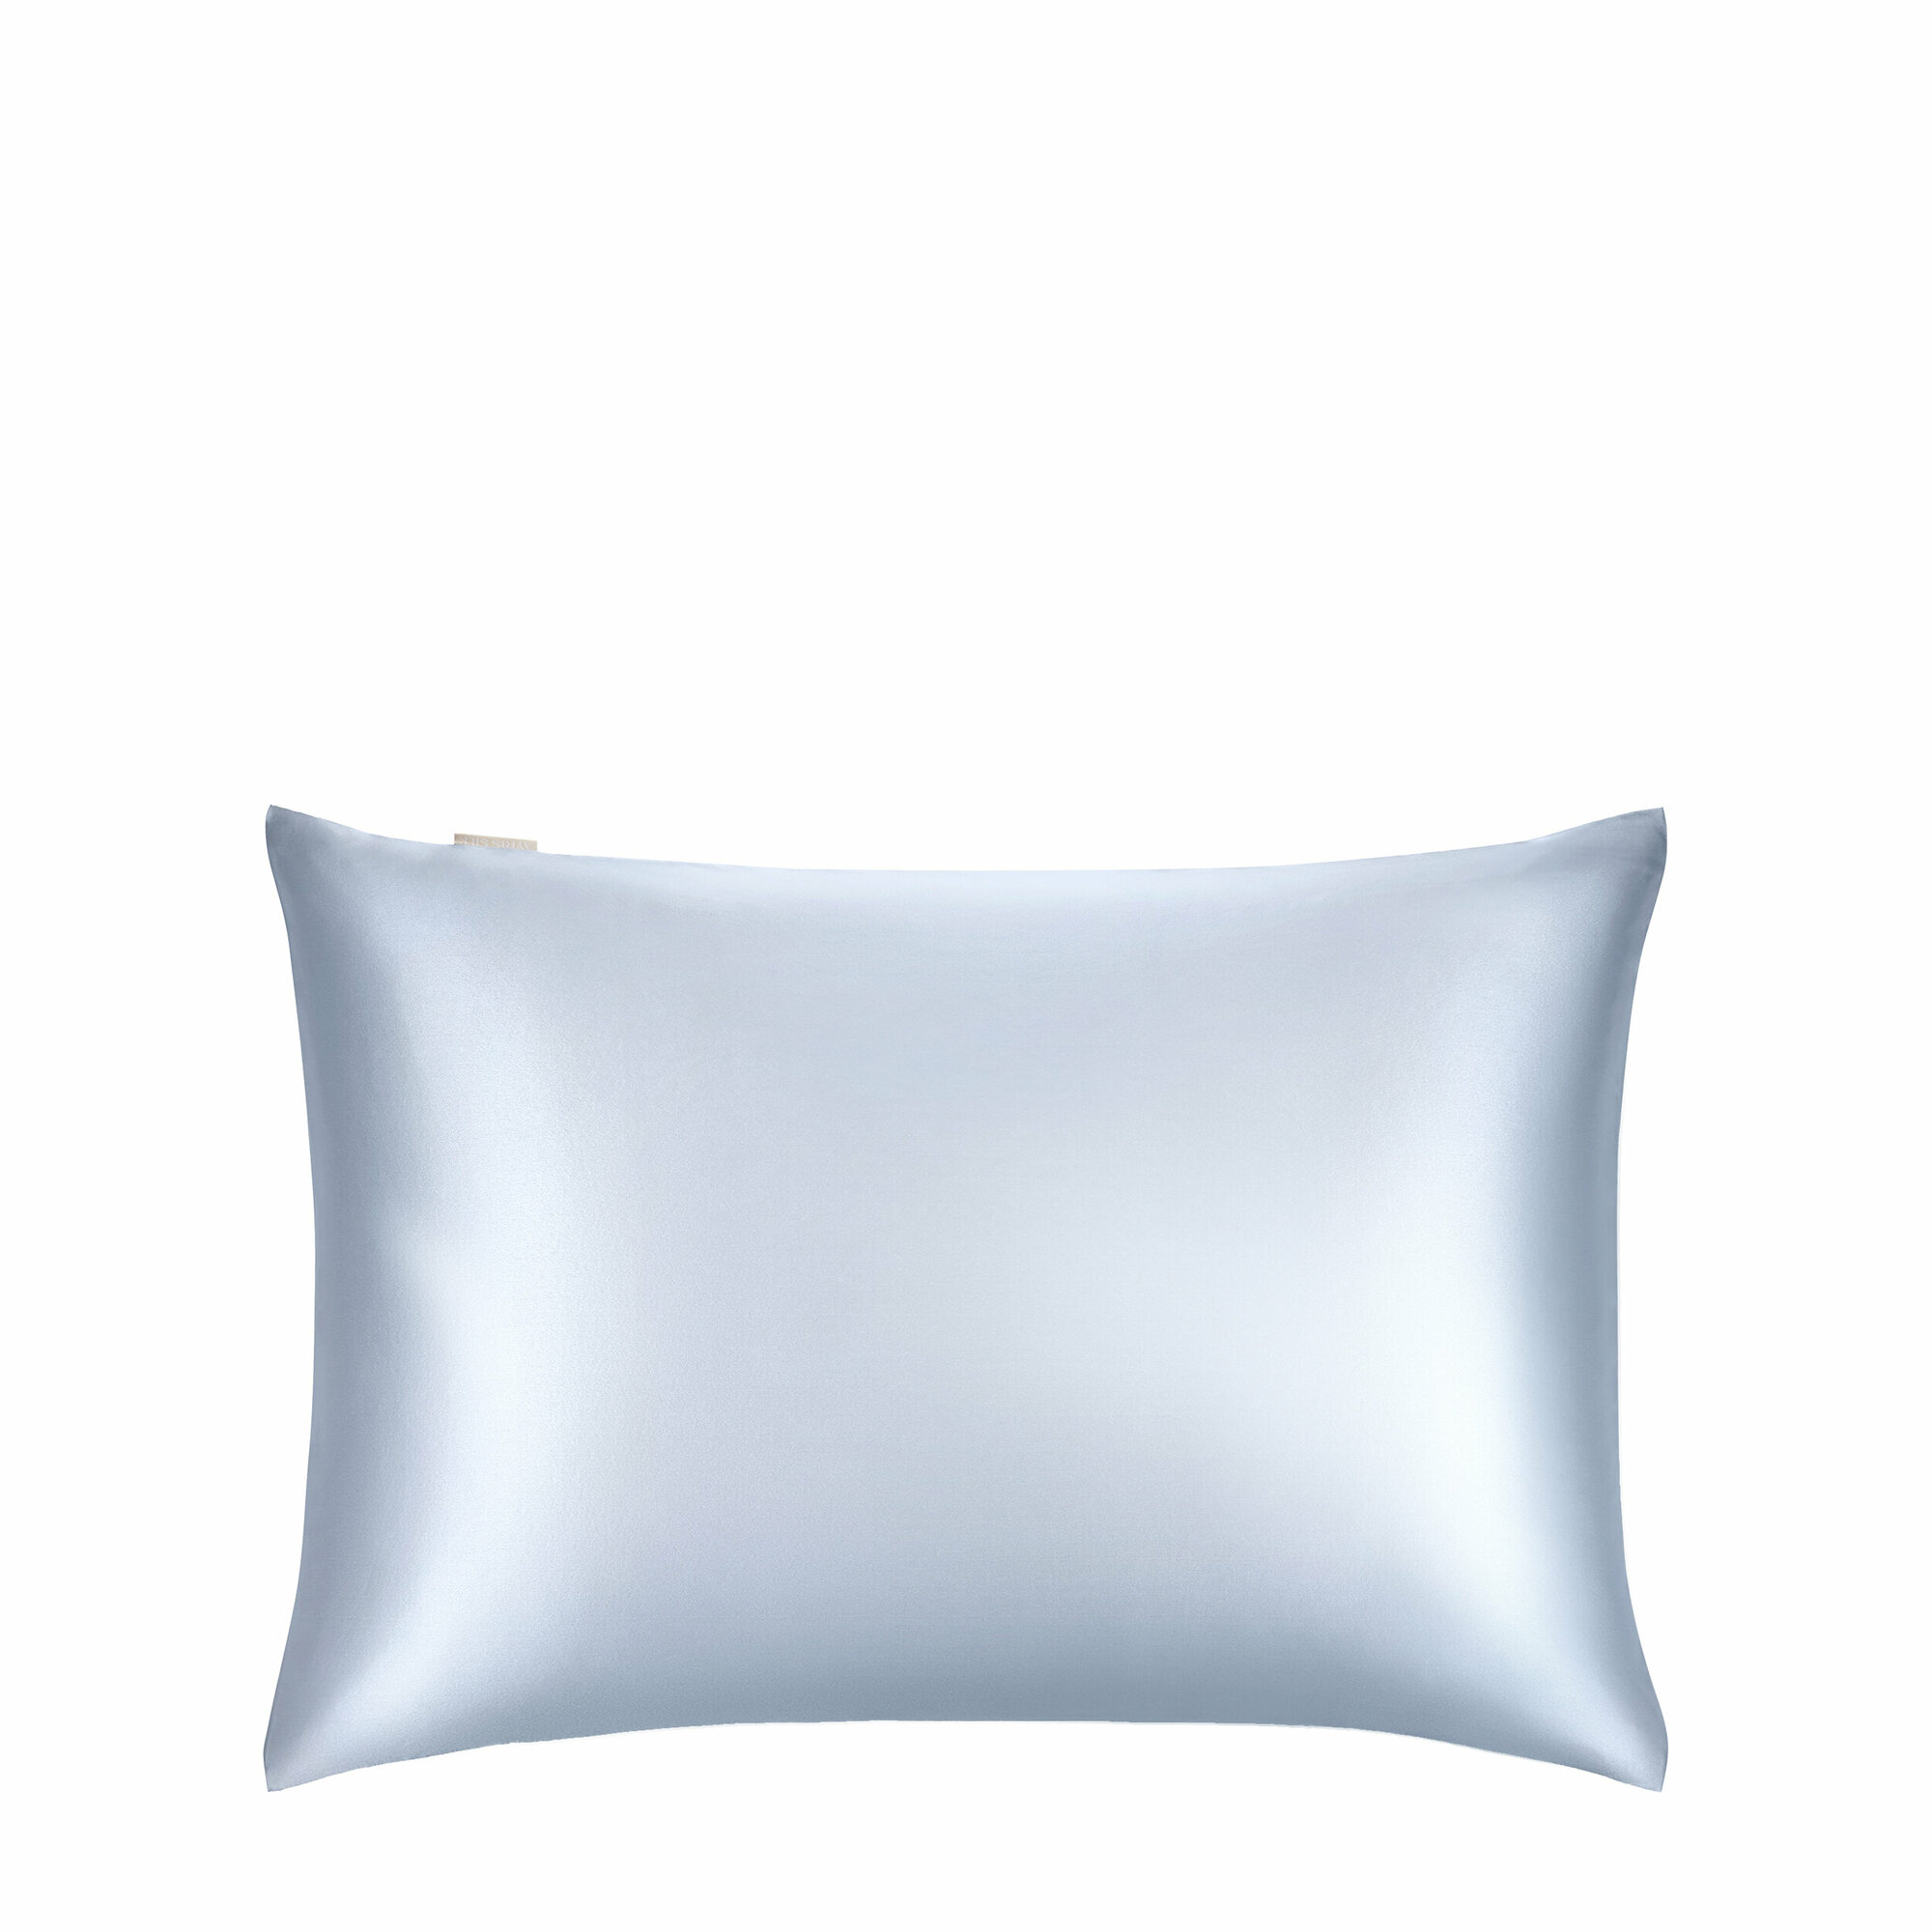 AYRIS SILK Наволочка Ayris Silk из натурального шёлка, арт. 5002, цвет серебристо-голубой (50x70)